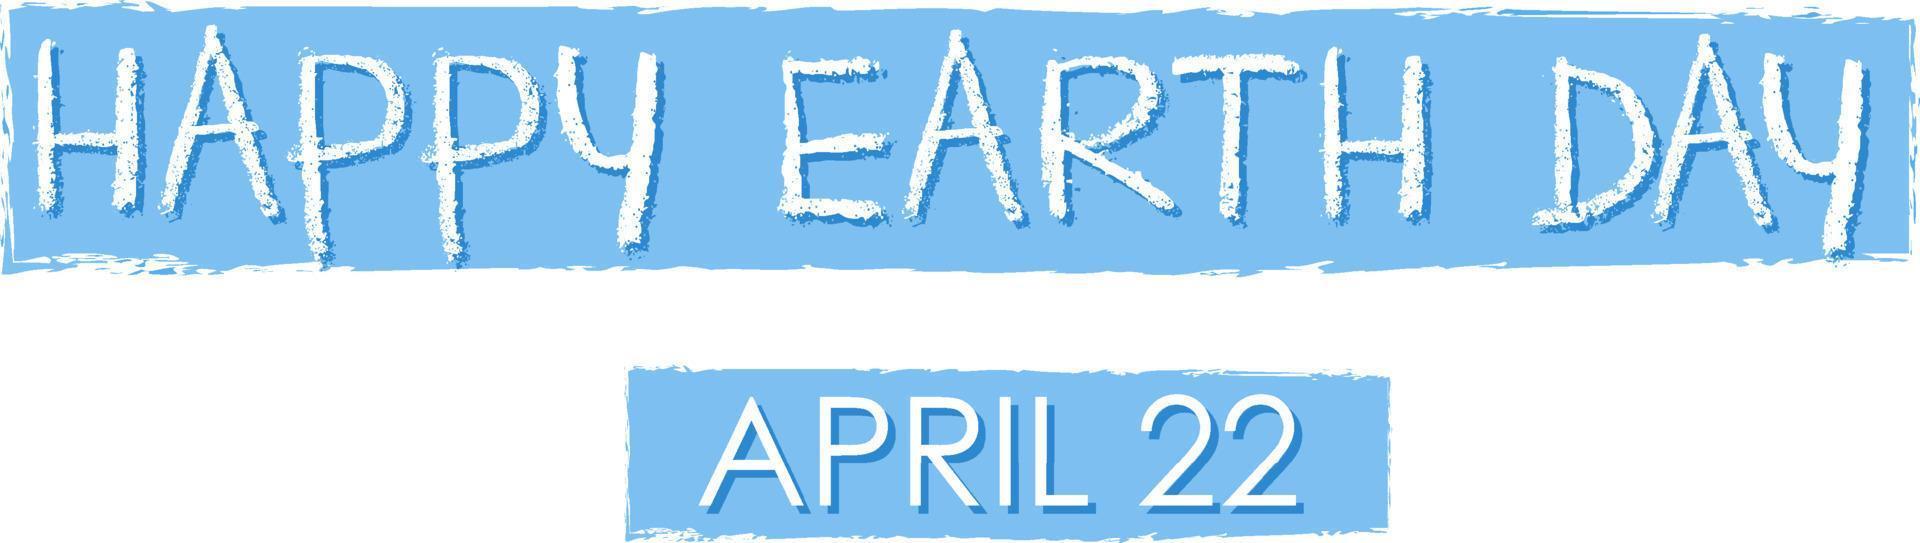 felice giorno della terra 22 aprile tipografia logo design vettore